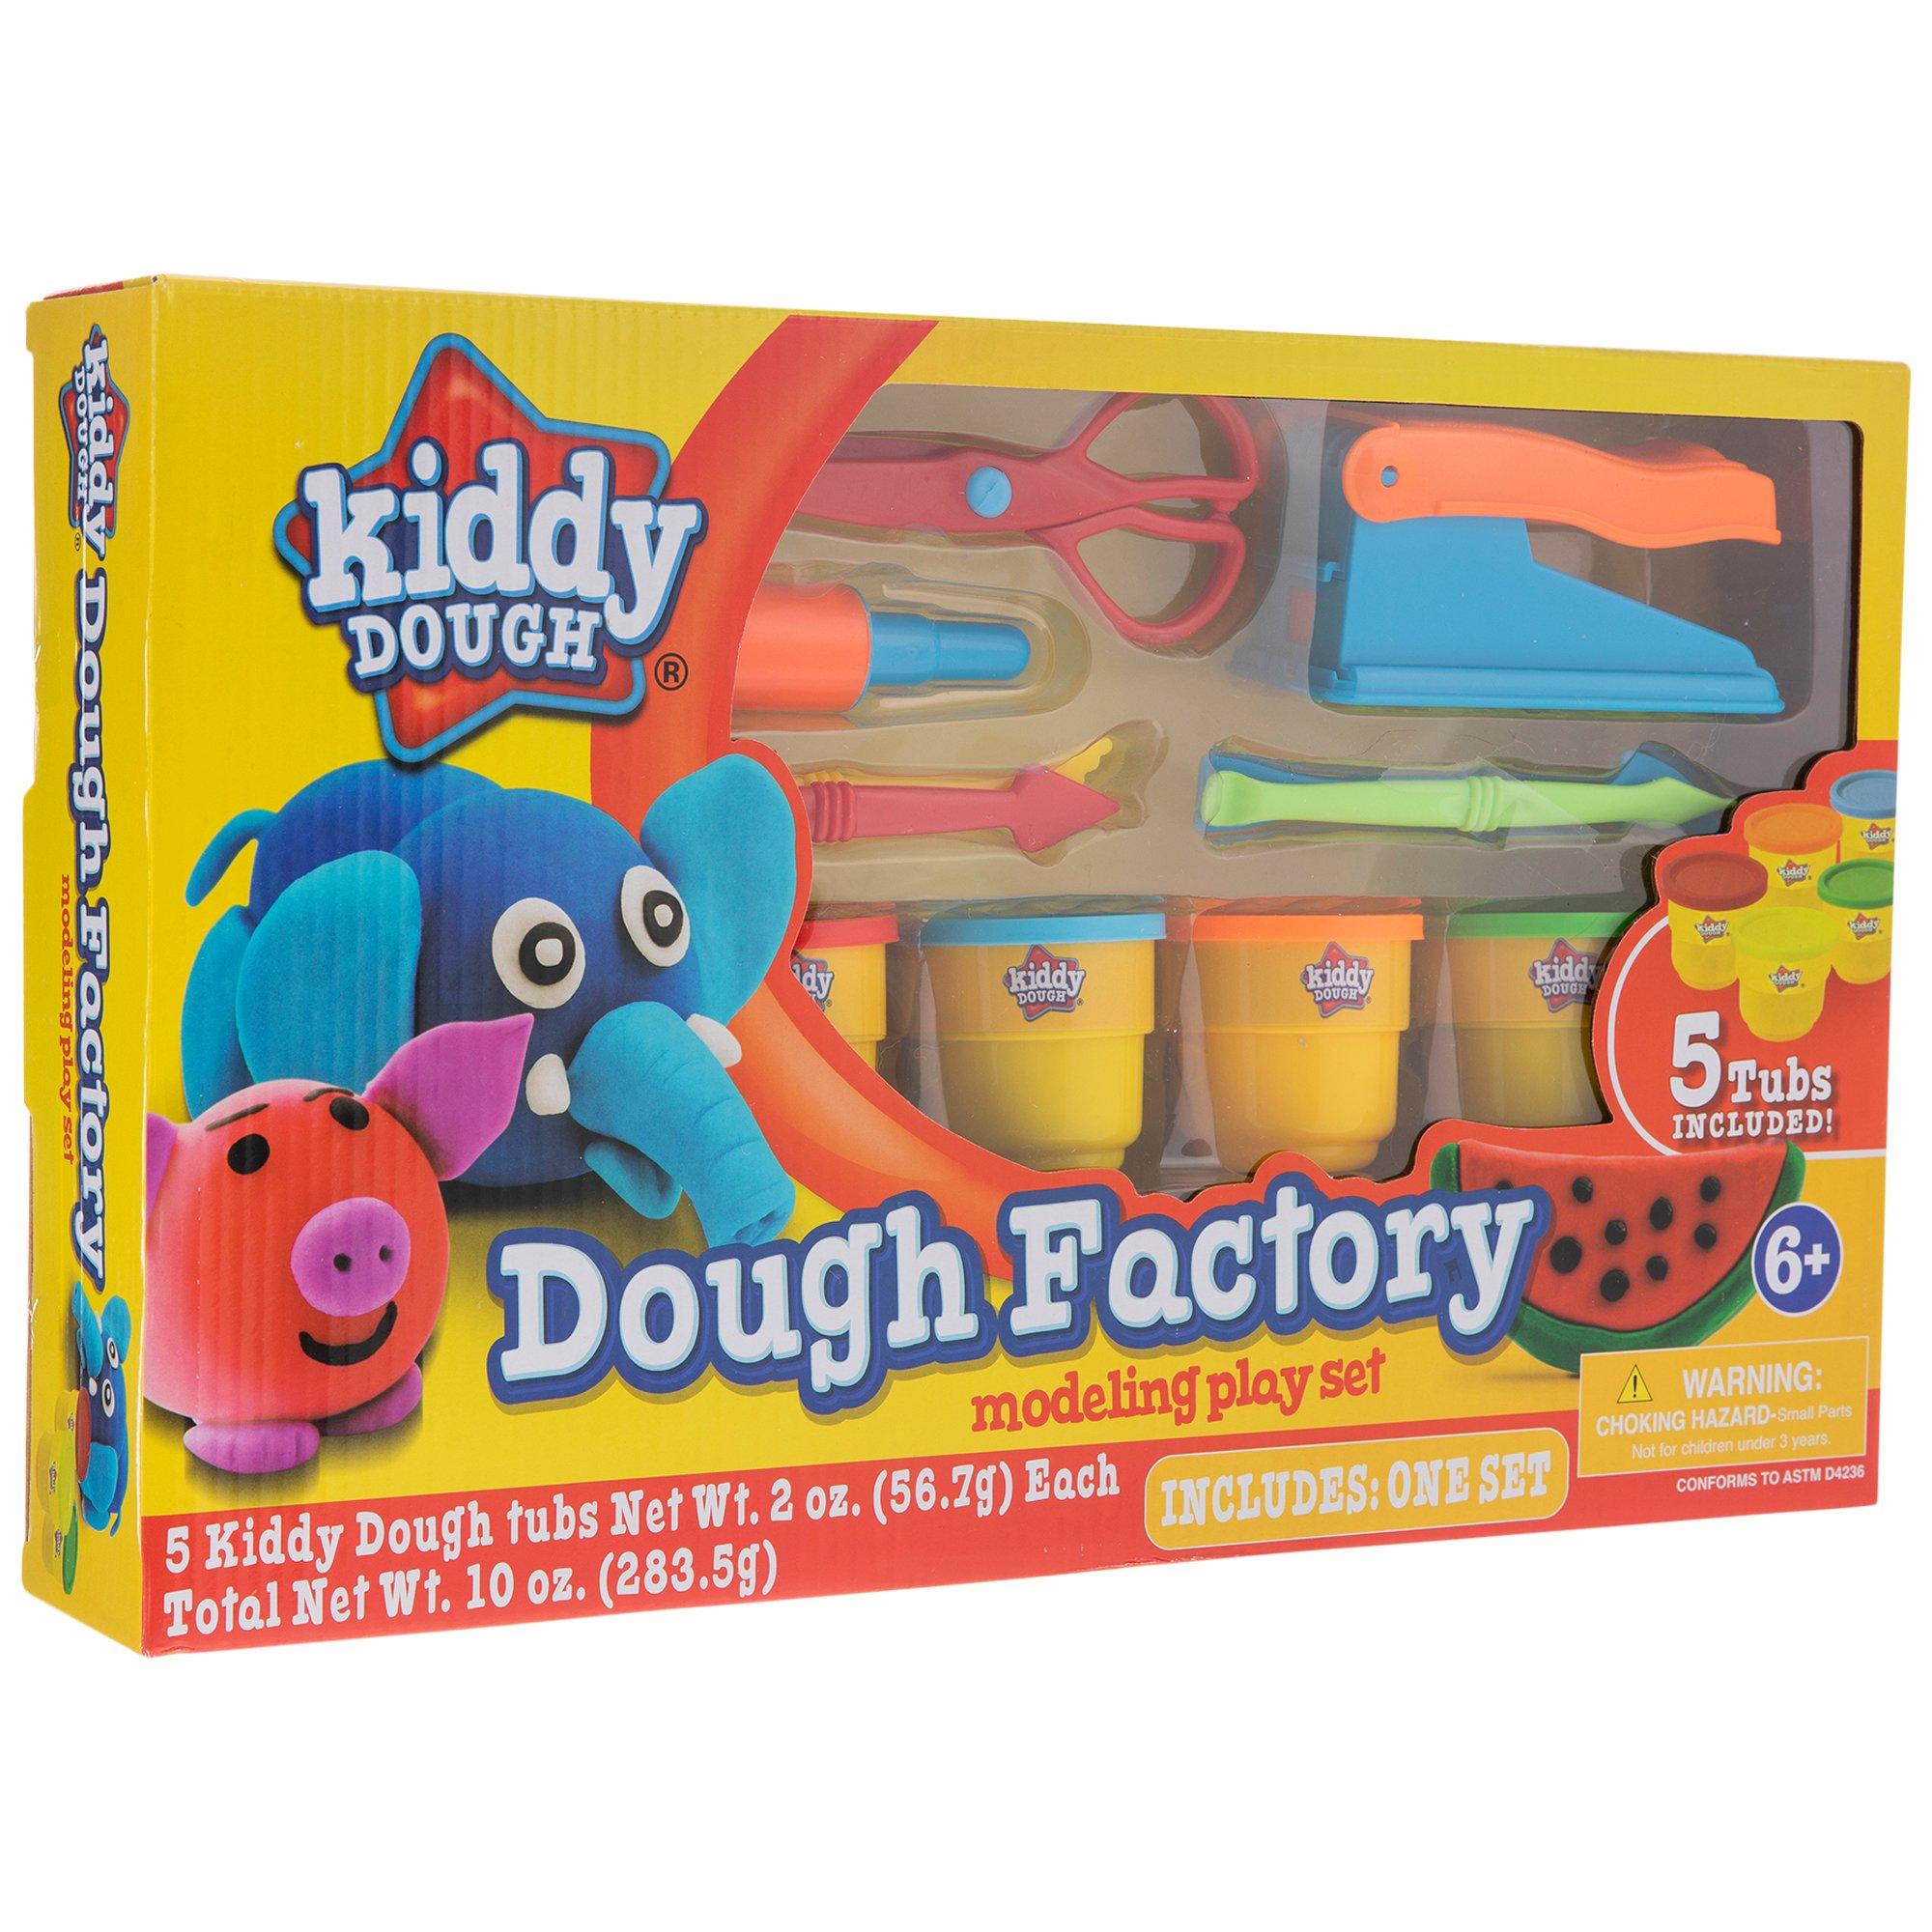 Play Dough Tool Kit With Dough Extruder, Dough Scissors, Playdough